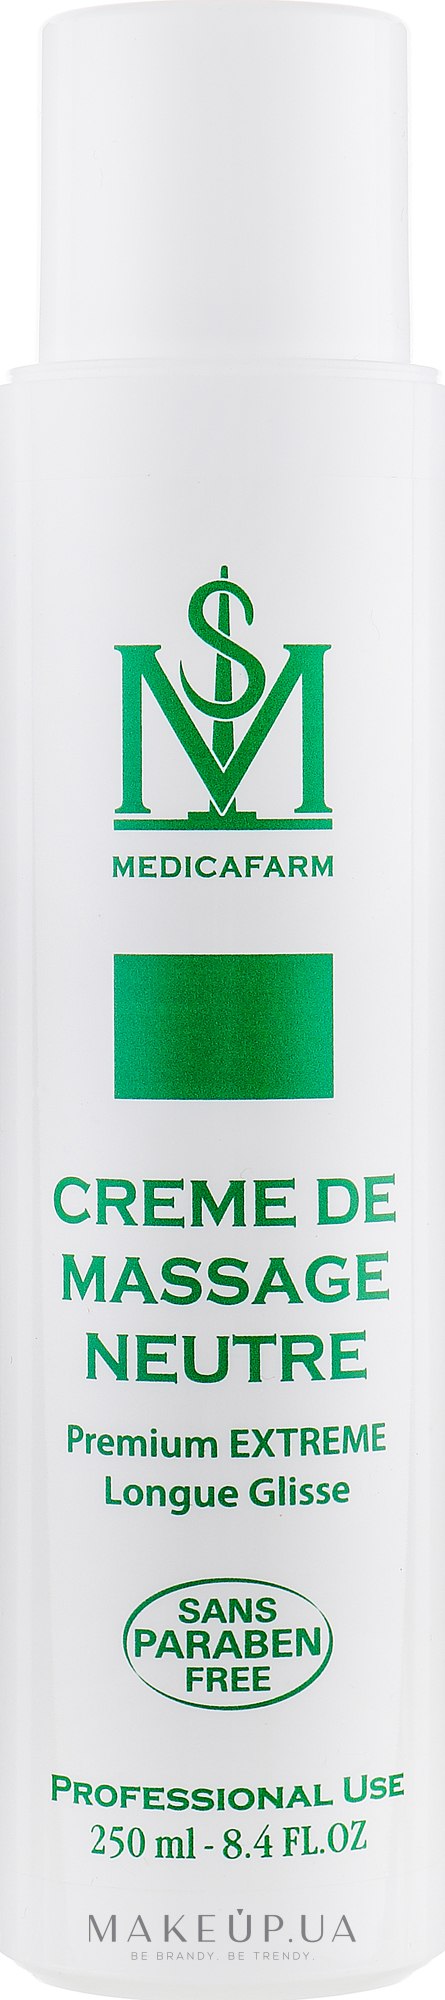 Нейтральный массажный крем экстремально длительного скольжения - Medicafarm Premium Extreme Longue Glisse Creme — фото 250ml